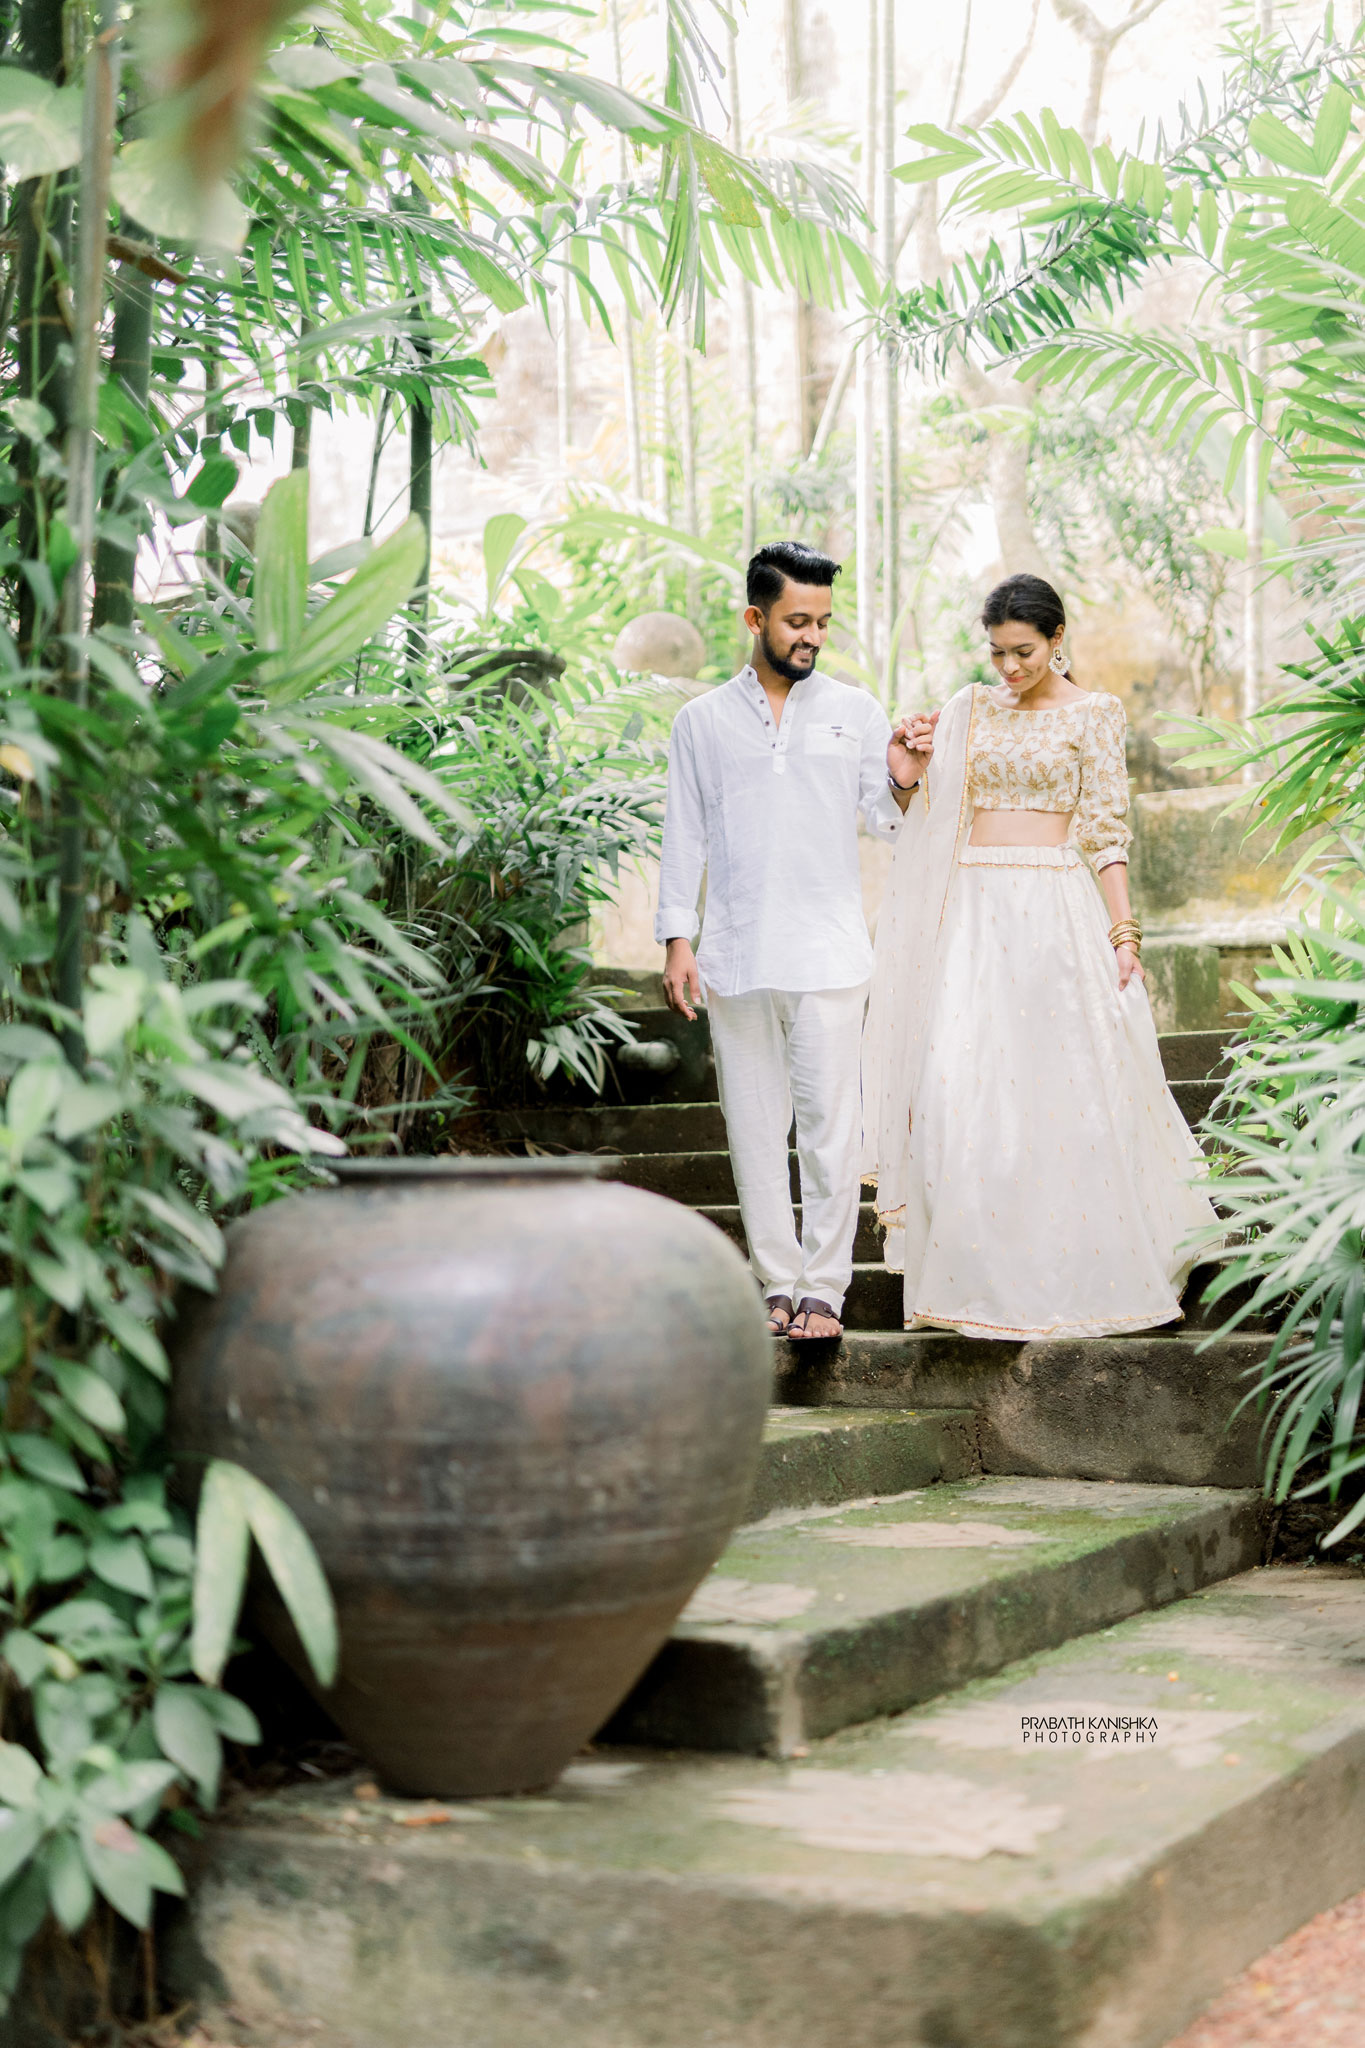 Seethani & Chathura - Prabath Kanishka Wedding Photography